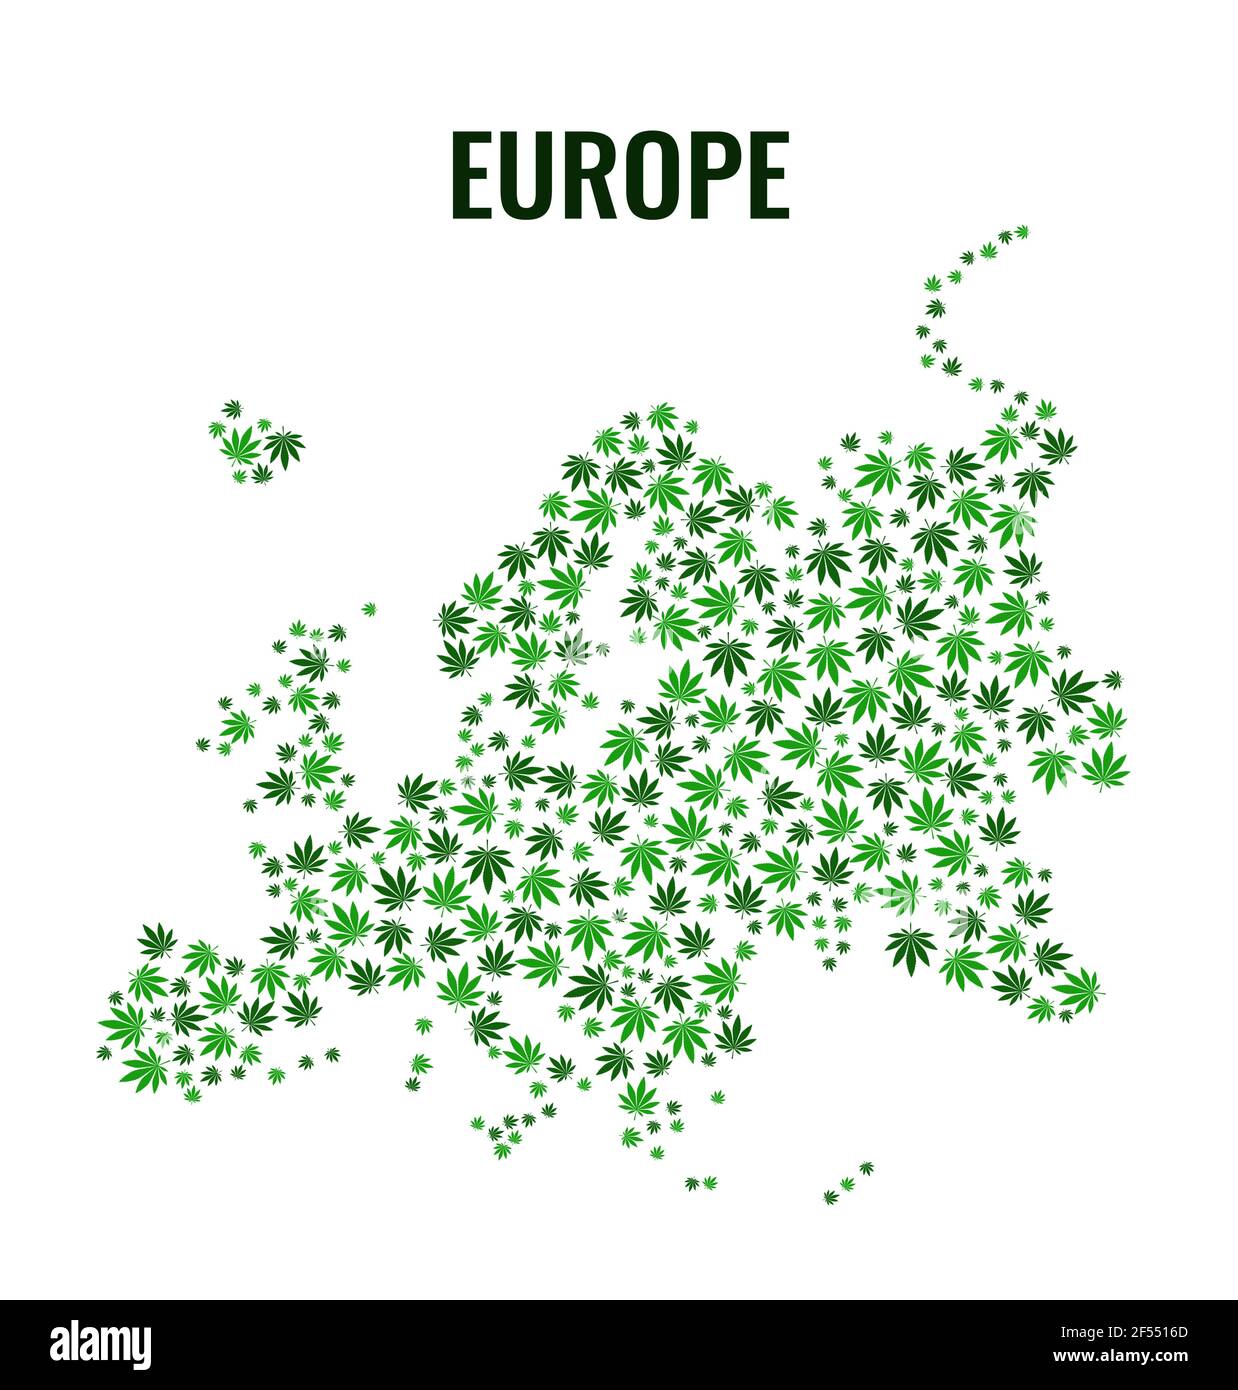 Mappa vettoriale dell'Europa. Raccolta di foglie verdi di cannabis in stile piatto. Illustrazione vettoriale. Illustrazione Vettoriale